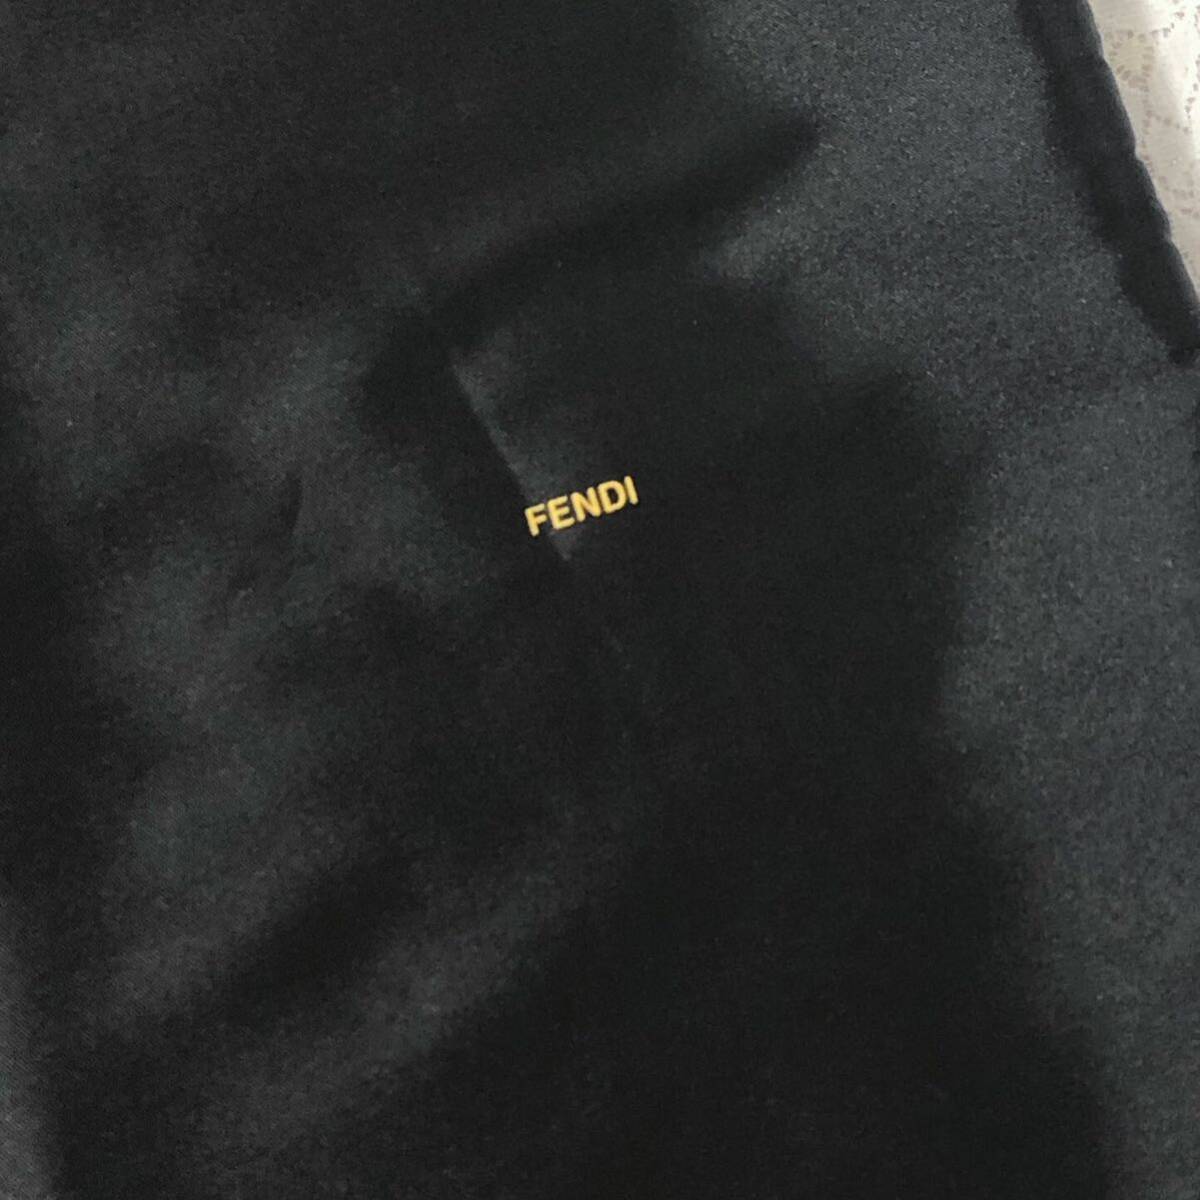 フェンディ「FENDI」バッグ保存袋 特大サイズ (3762) 正規品 付属品 布袋 巾着袋 布製 ナイロン生地 ブラック 69×68cm 大きめの画像3